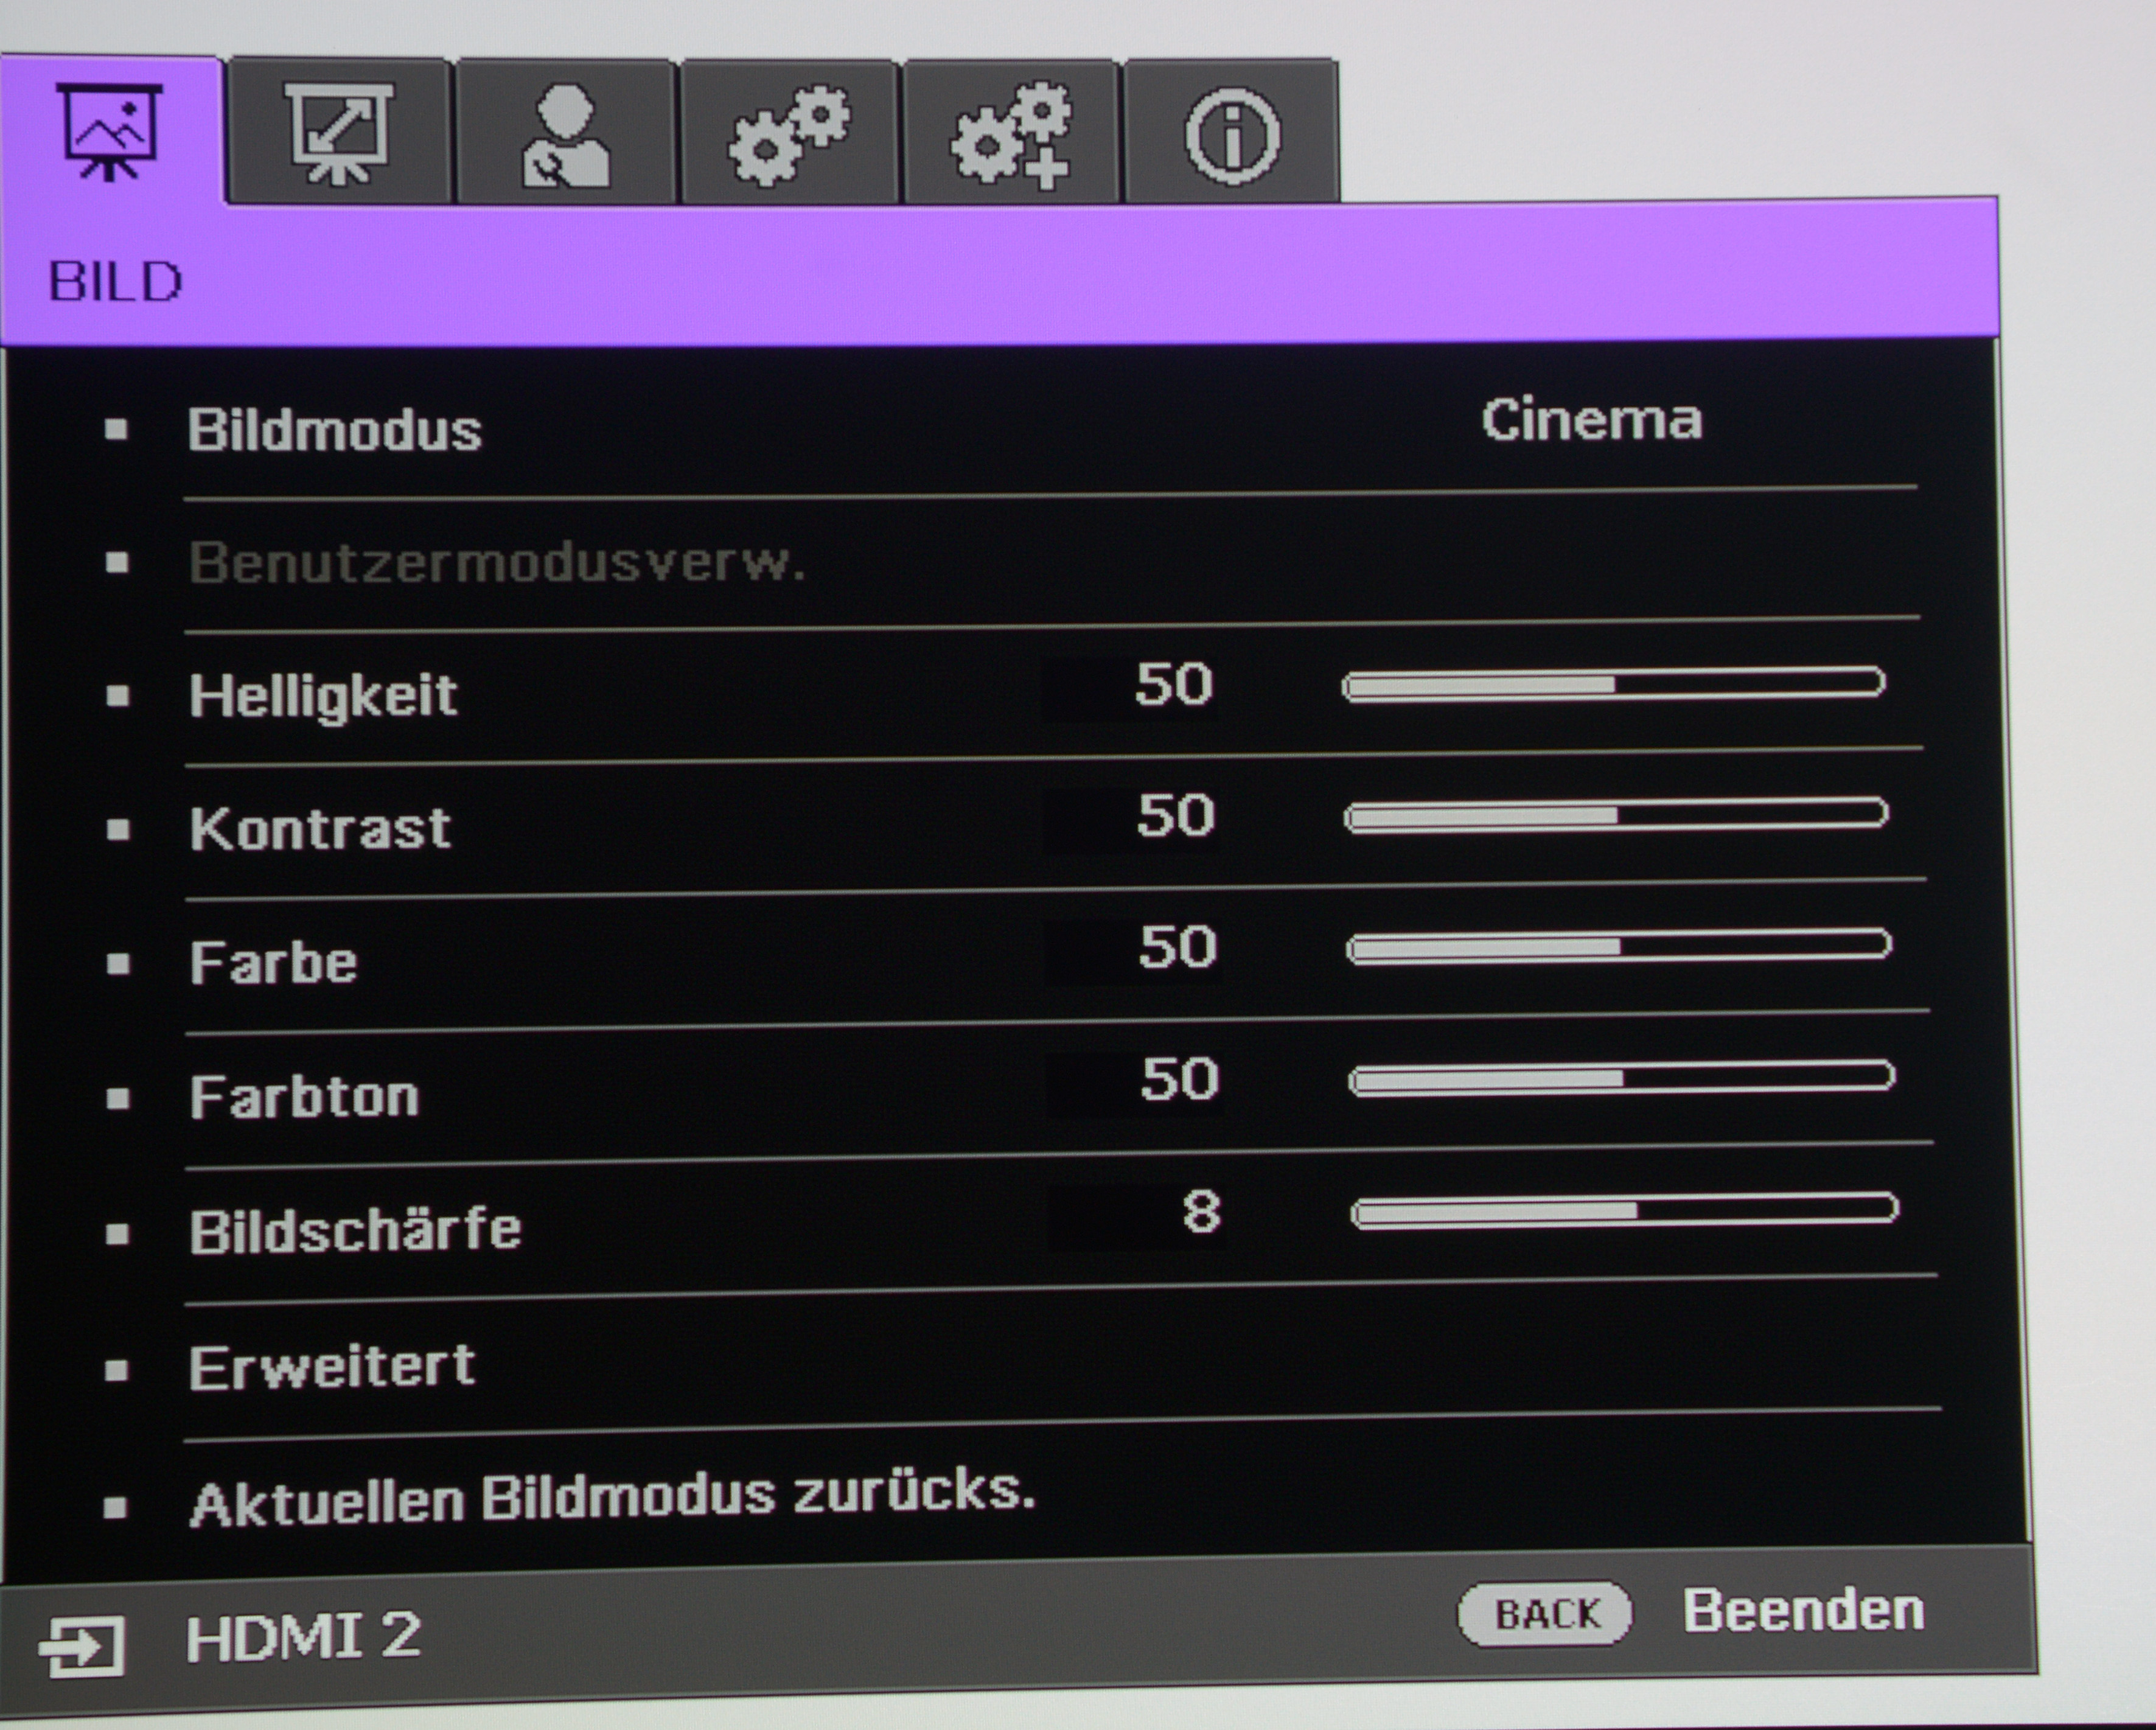 Foto: Michael B. Rehders Das On-Screen-Menü des BenQ X12000 ist übersichtlich gestaltet. Im Bildmodus „Cinema“ wird der Rec.709-Farbraum für HDTV-Filme von Blu-ray, TV und Streaming-Diensten darstellt.